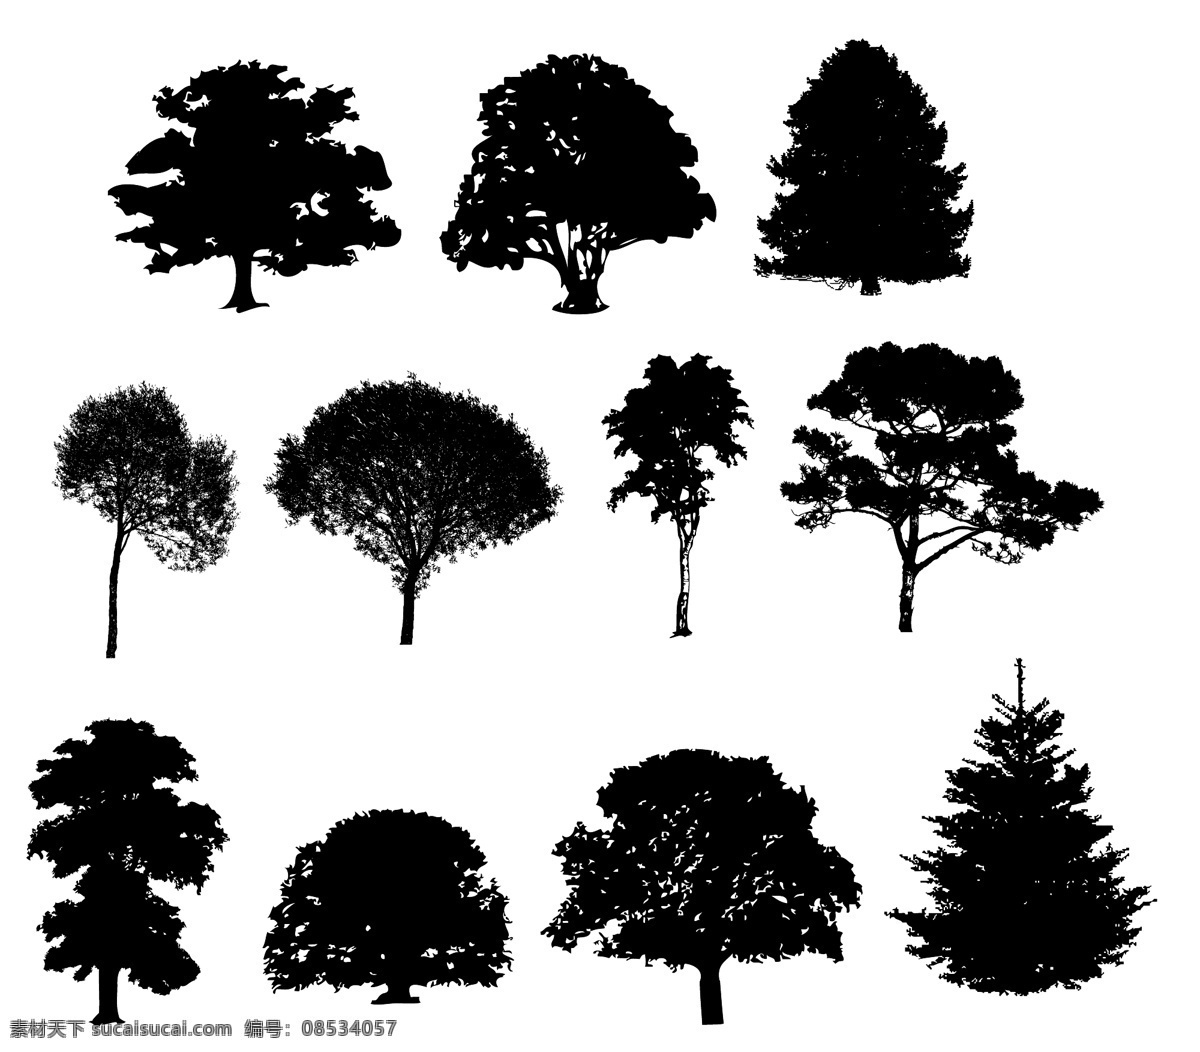 树木剪影 树木 矢量树木 卡通树木 园林 树叶 绿树 保护环境 环境保护 环保 自然 树木贴图 建筑 效果图 设计素材 植物 树木树叶 生物世界 矢量